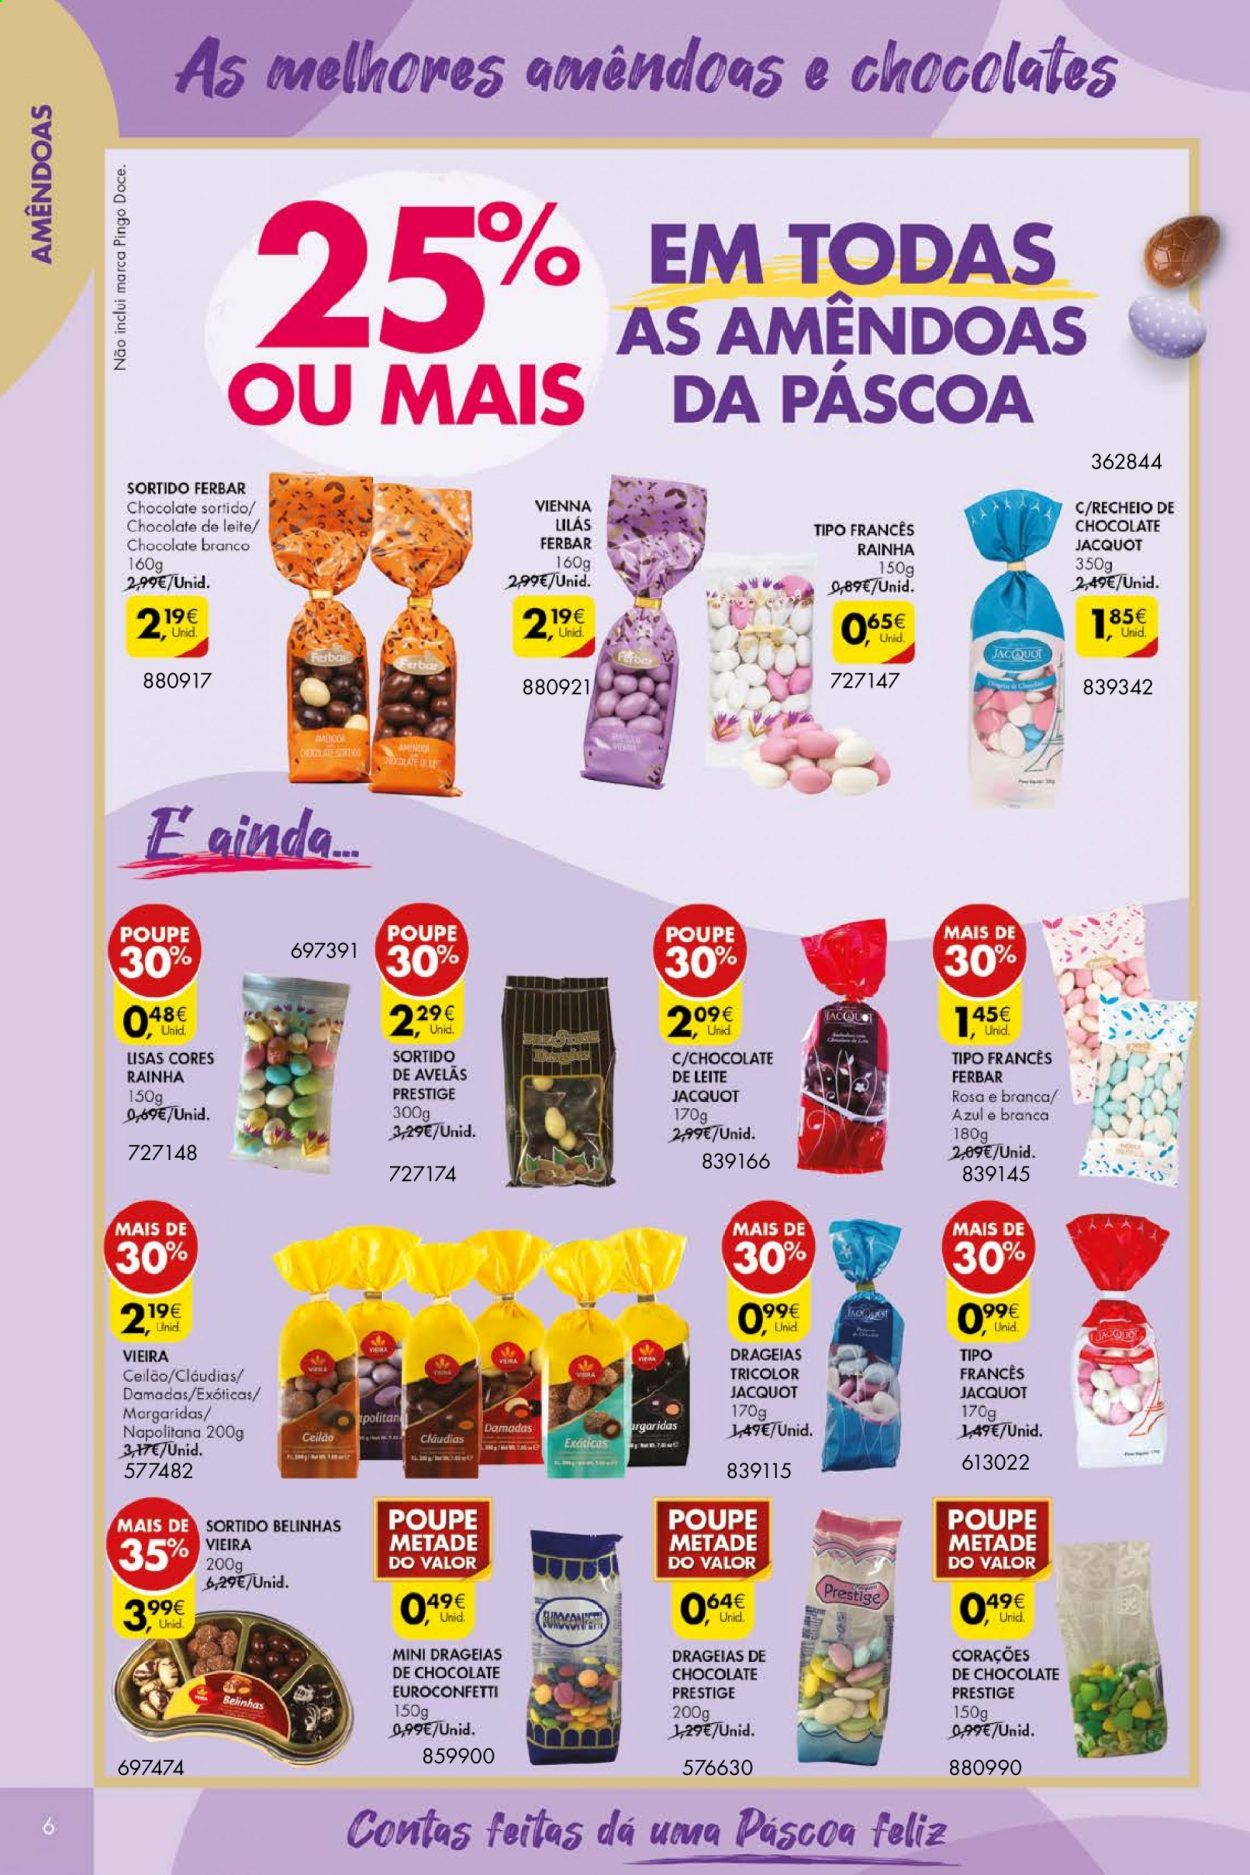 thumbnail - Folheto Pingo Doce - 30.3.2021 - 5.4.2021 - Produtos em promoção - chocolate branco, Ferbar, amêndoa. Página 6.